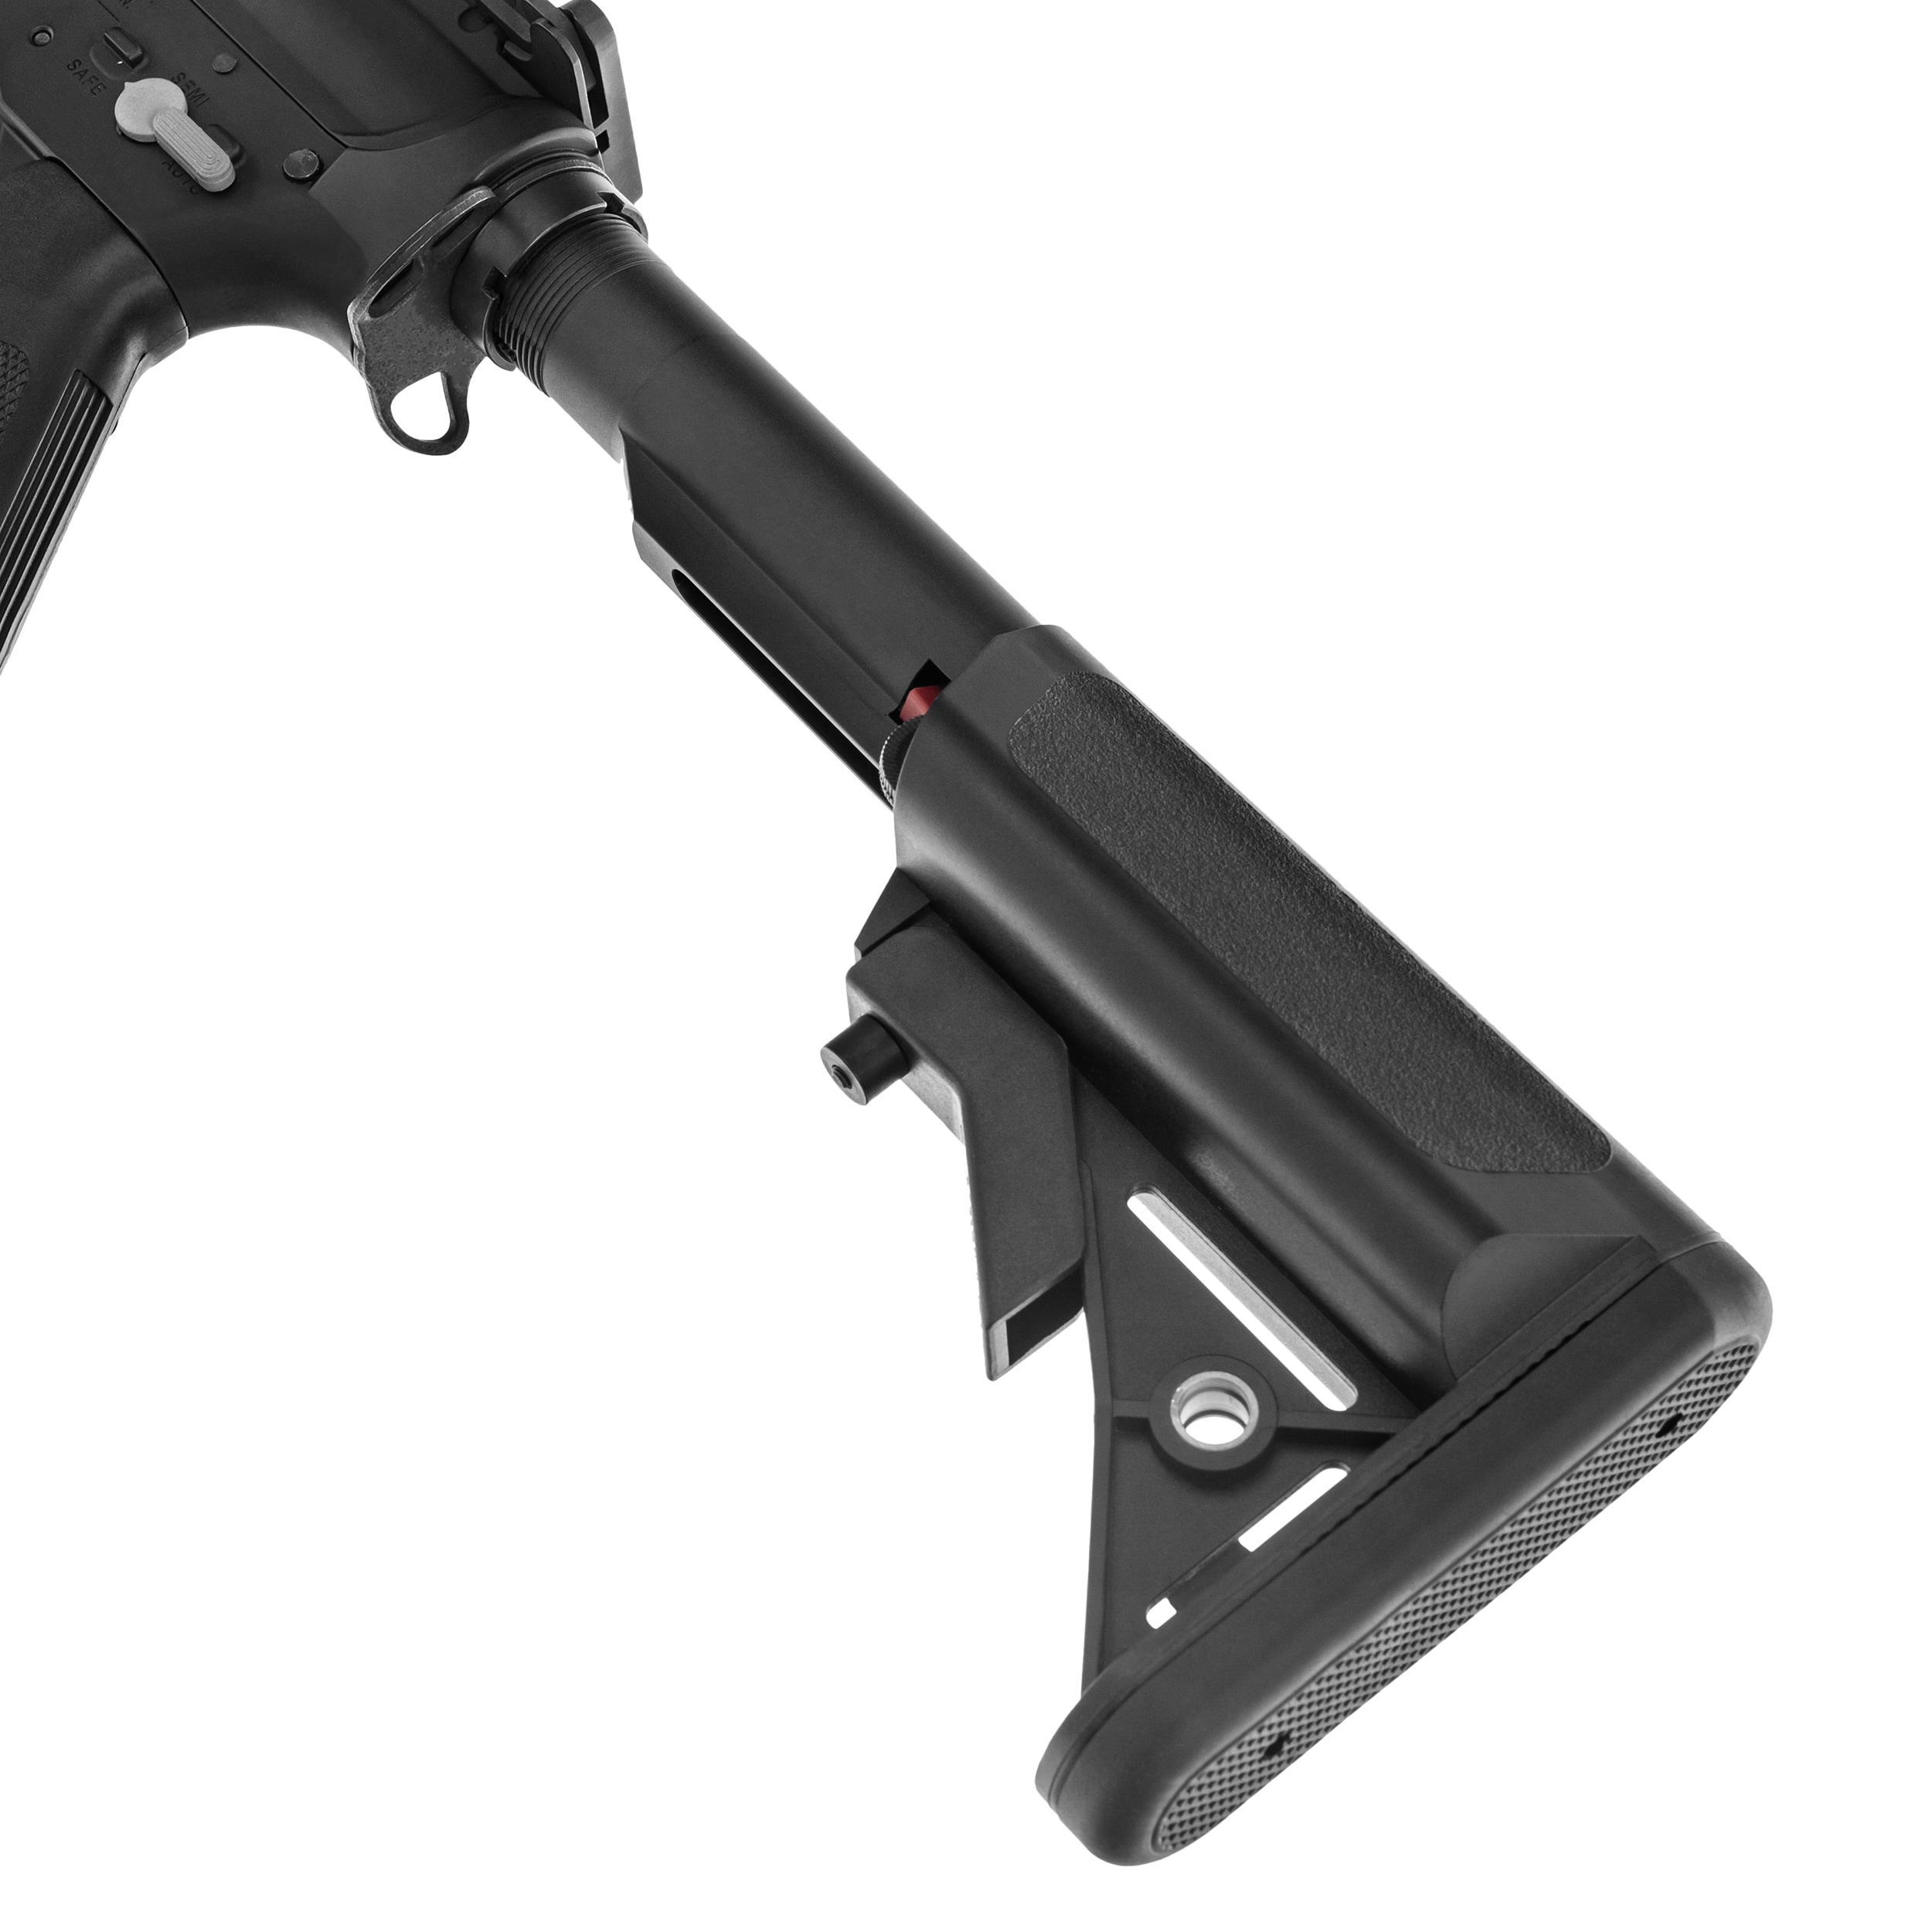 Karabinek szturmowy AEG Cybergun Colt MK18 MOD I - Black